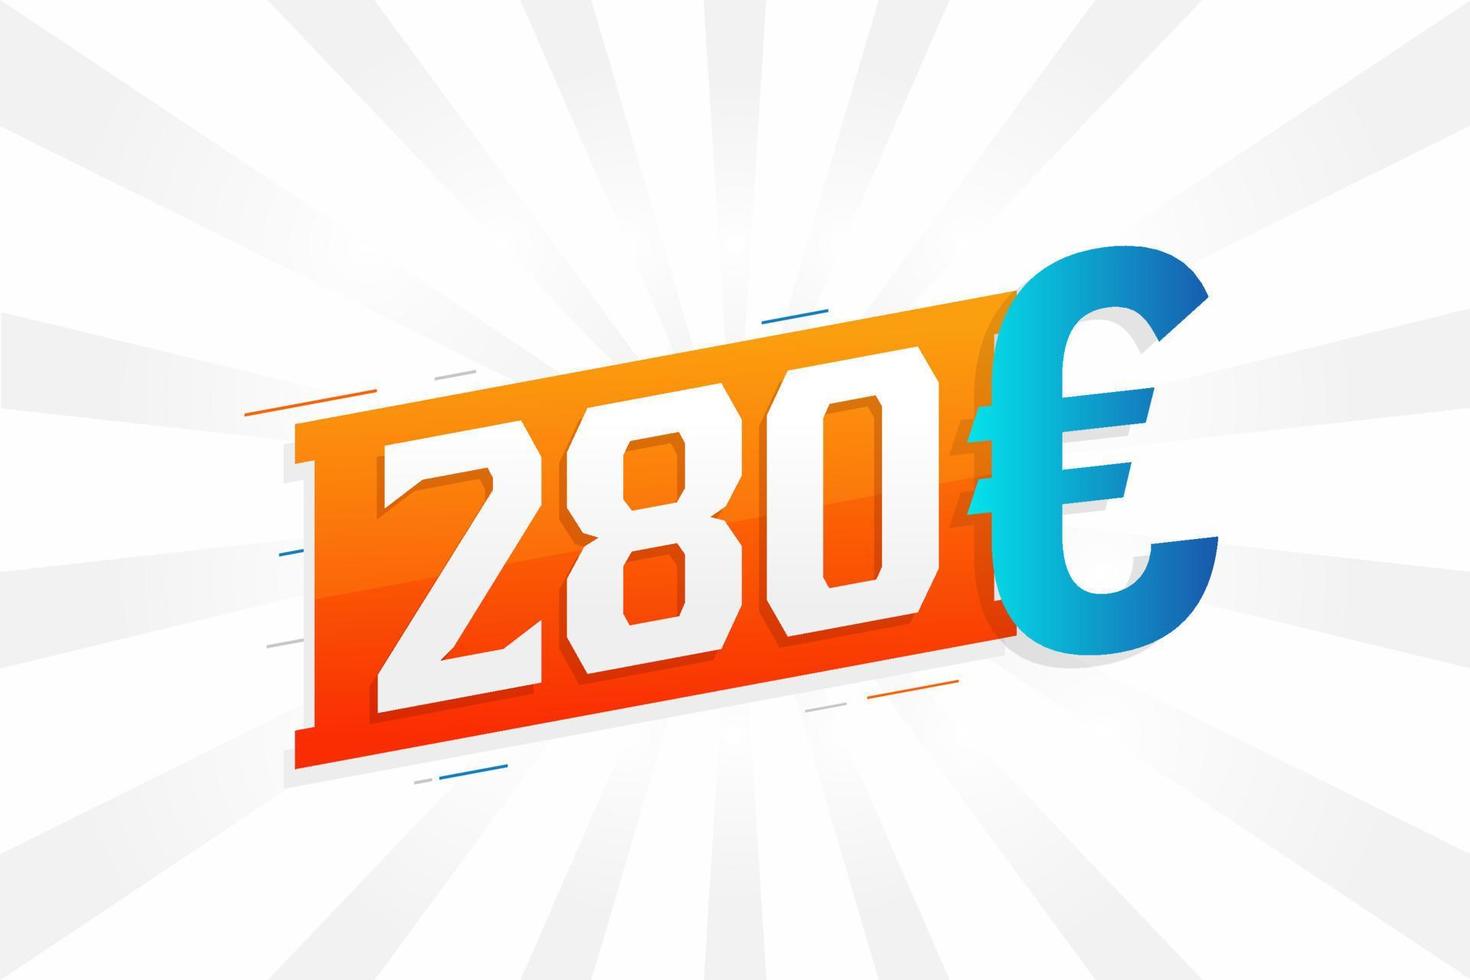 Symbole de texte vectoriel de devise de 280 euros. 280 euros vecteur de stock d'argent de l'union européenne